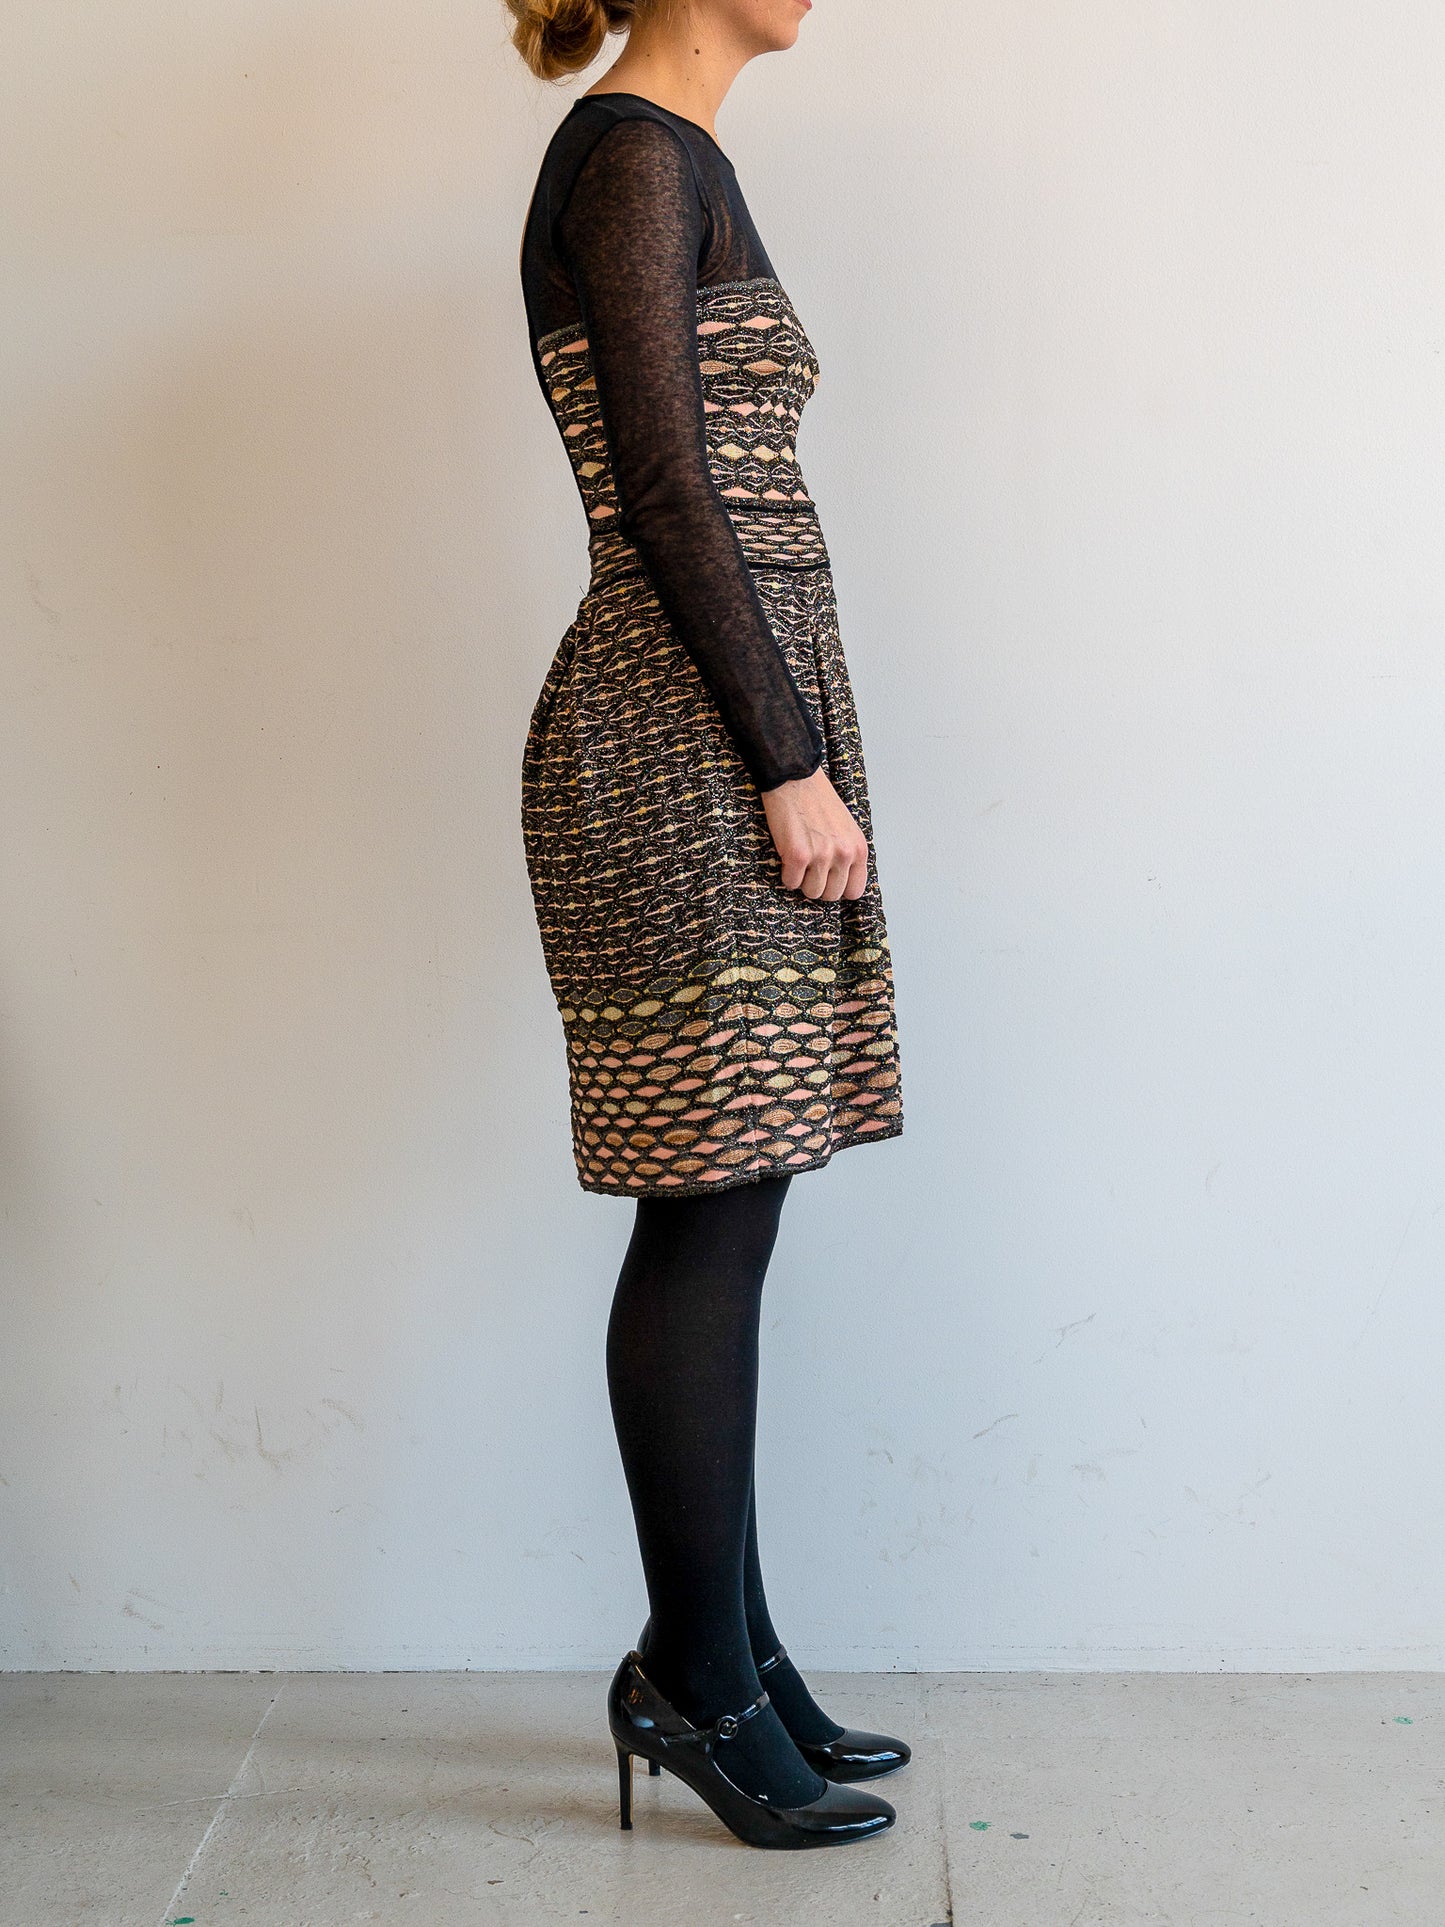 Missoni knit dress (XS)